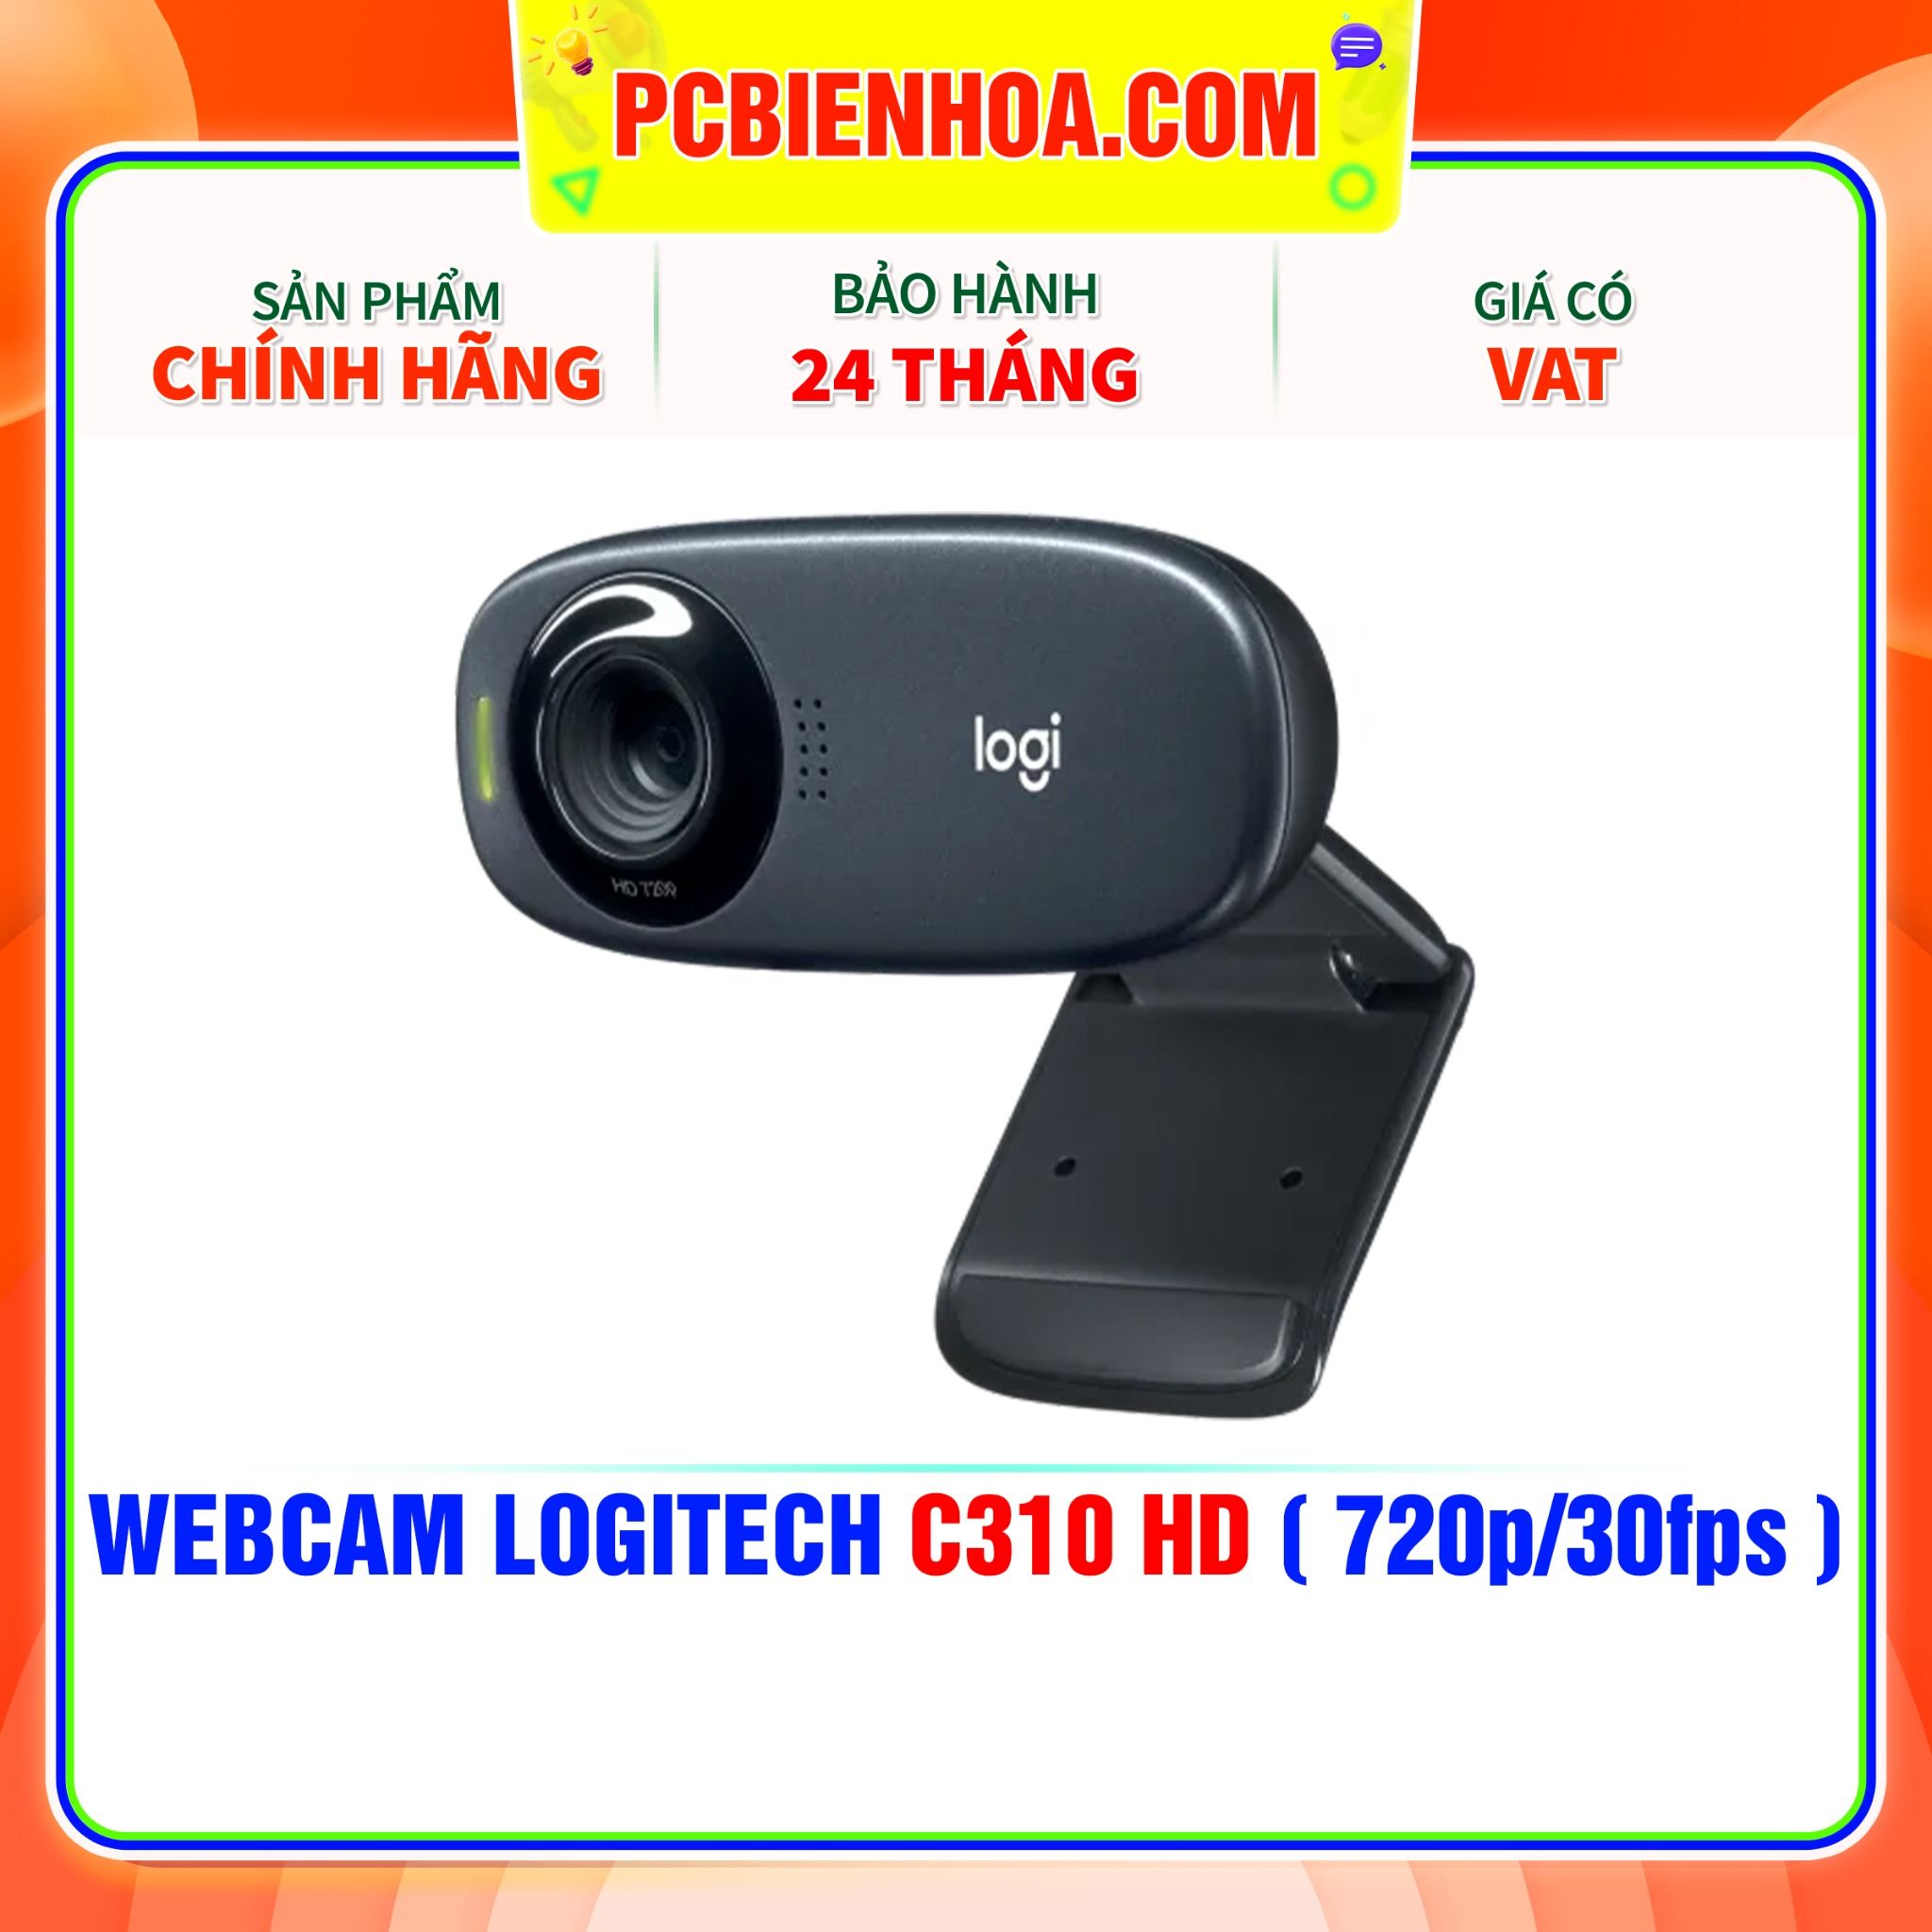  WEBCAM LOGITECH C310 HD ( 720p/30fps ) 